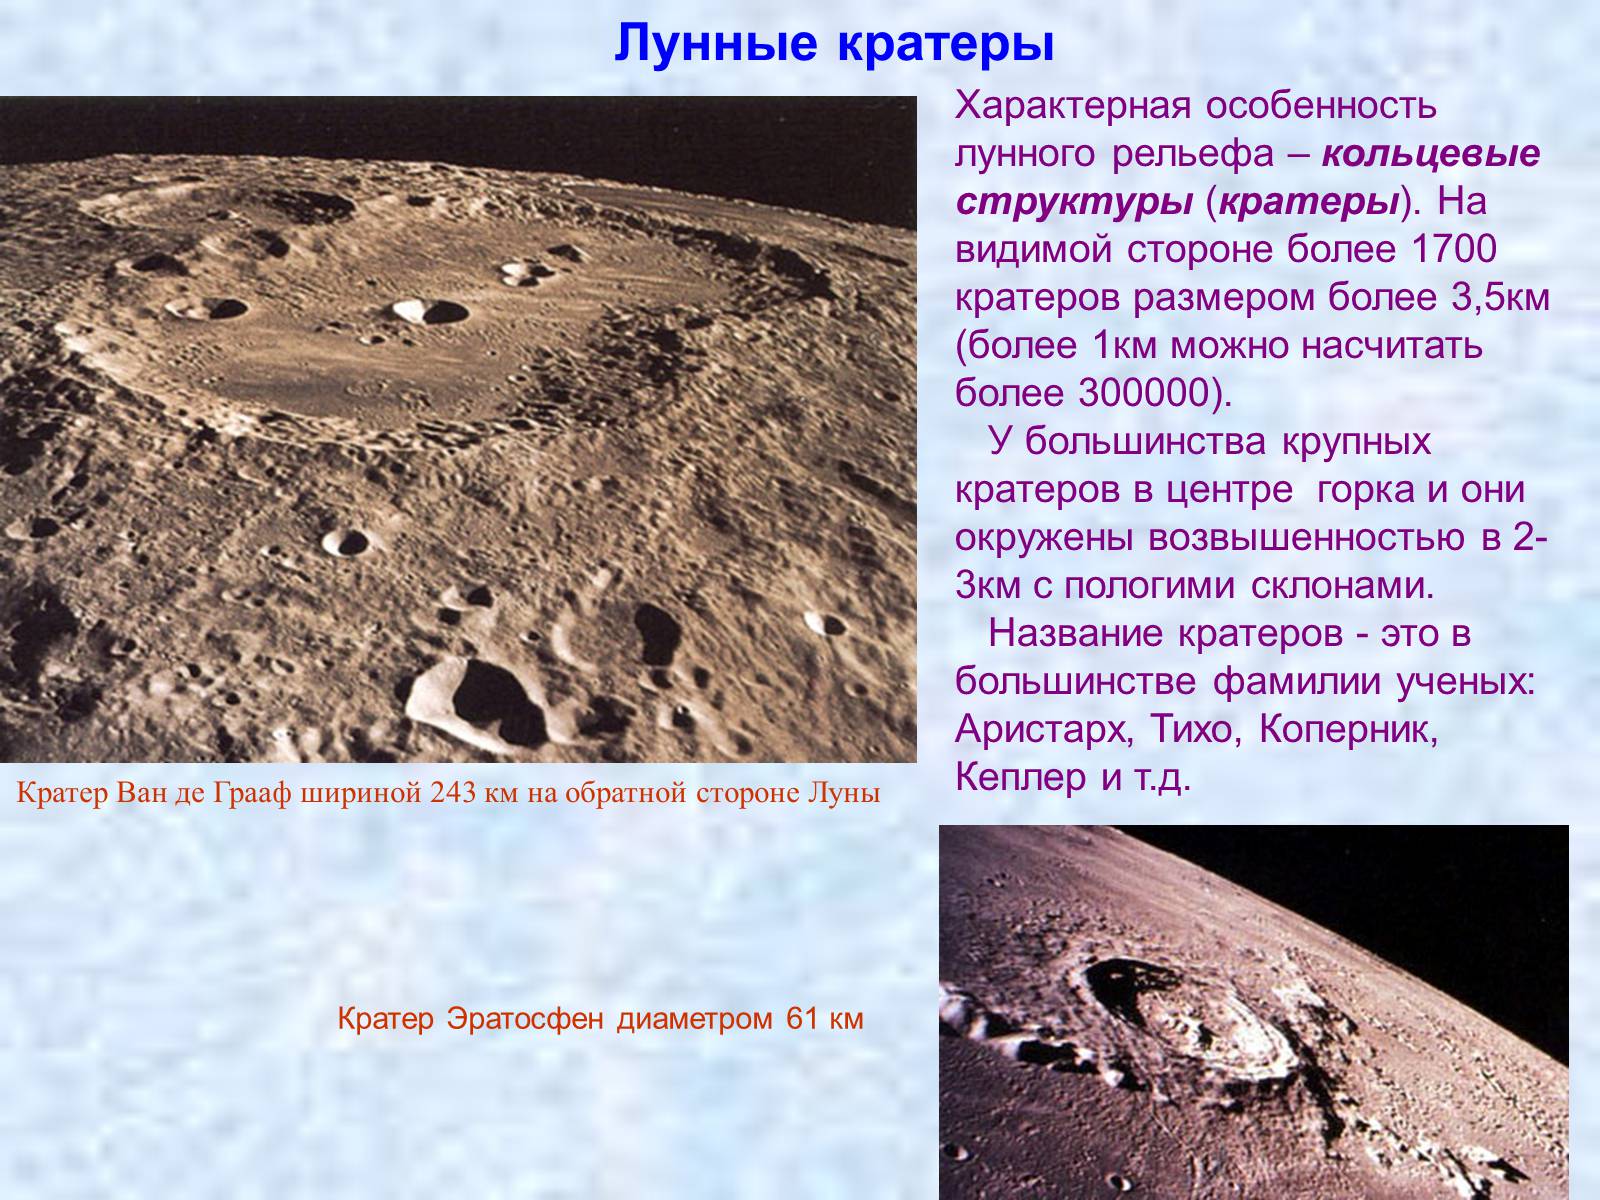 Что является причиной образования кратеров на луне. Поверхность Луны кратеры. Луна рельеф поверхности. Лунного рельефа – кольцевые структуры (кратеры).. Размеры кратеров на Луне.